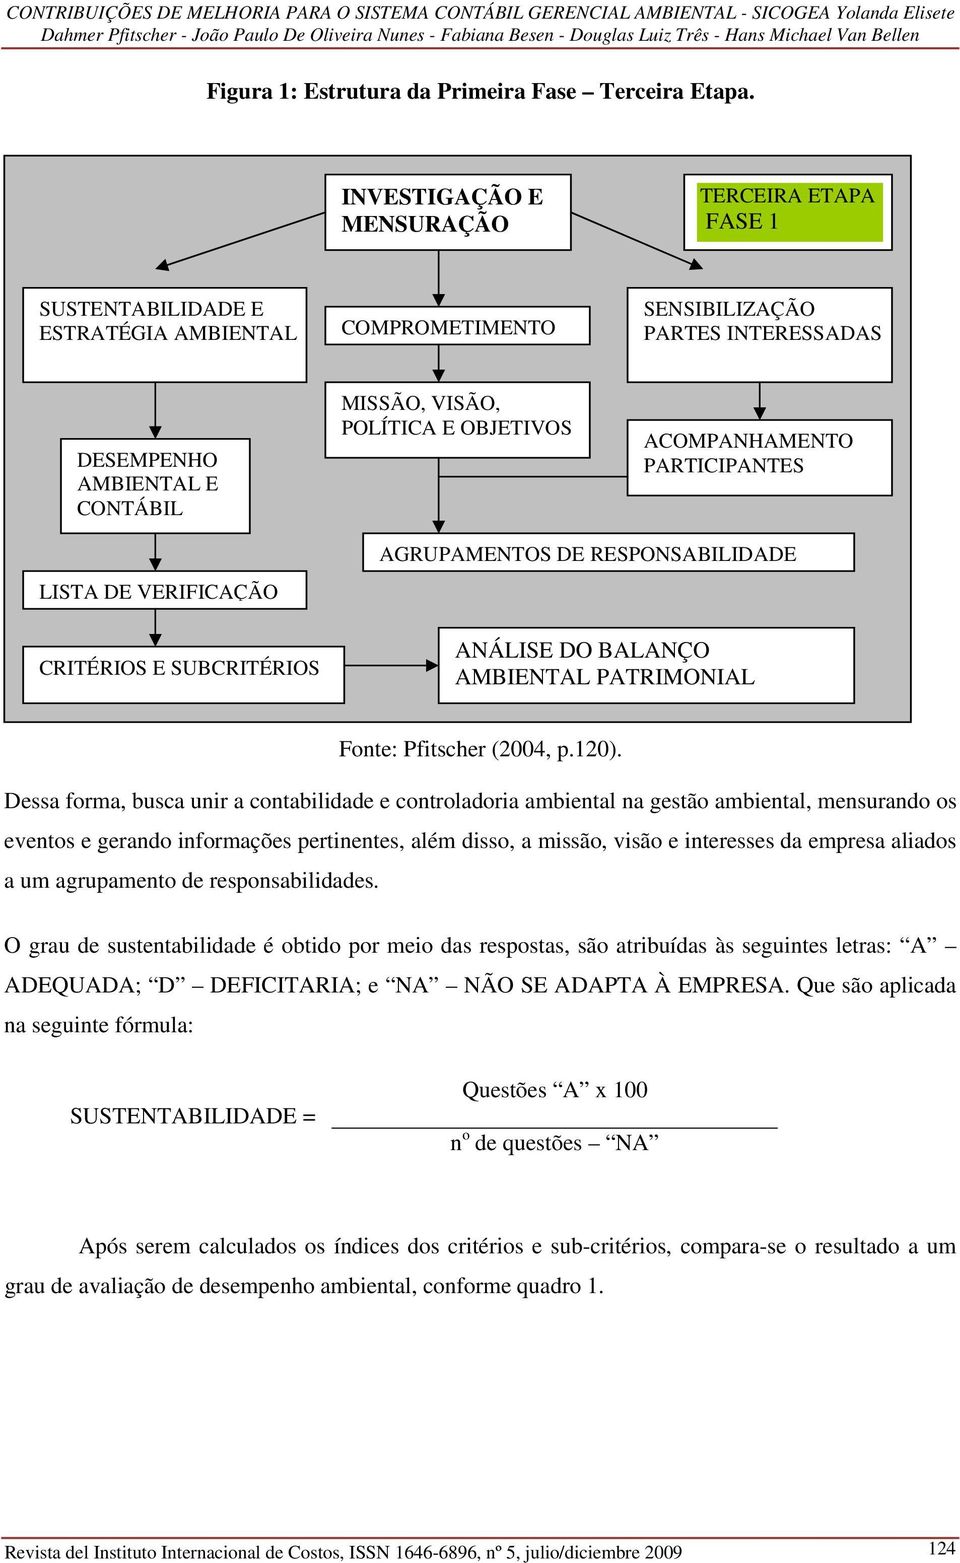 OBJETIVOS ACOMPANHAMENTO PARTICIPANTES LISTA DE VERIFICAÇÃO CRITÉRIOS E SUBCRITÉRIOS AGRUPAMENTOS DE RESPONSABILIDADE ANÁLISE DO BALANÇO AMBIENTAL PATRIMONIAL Fonte: Pfitscher (2004, p.120).